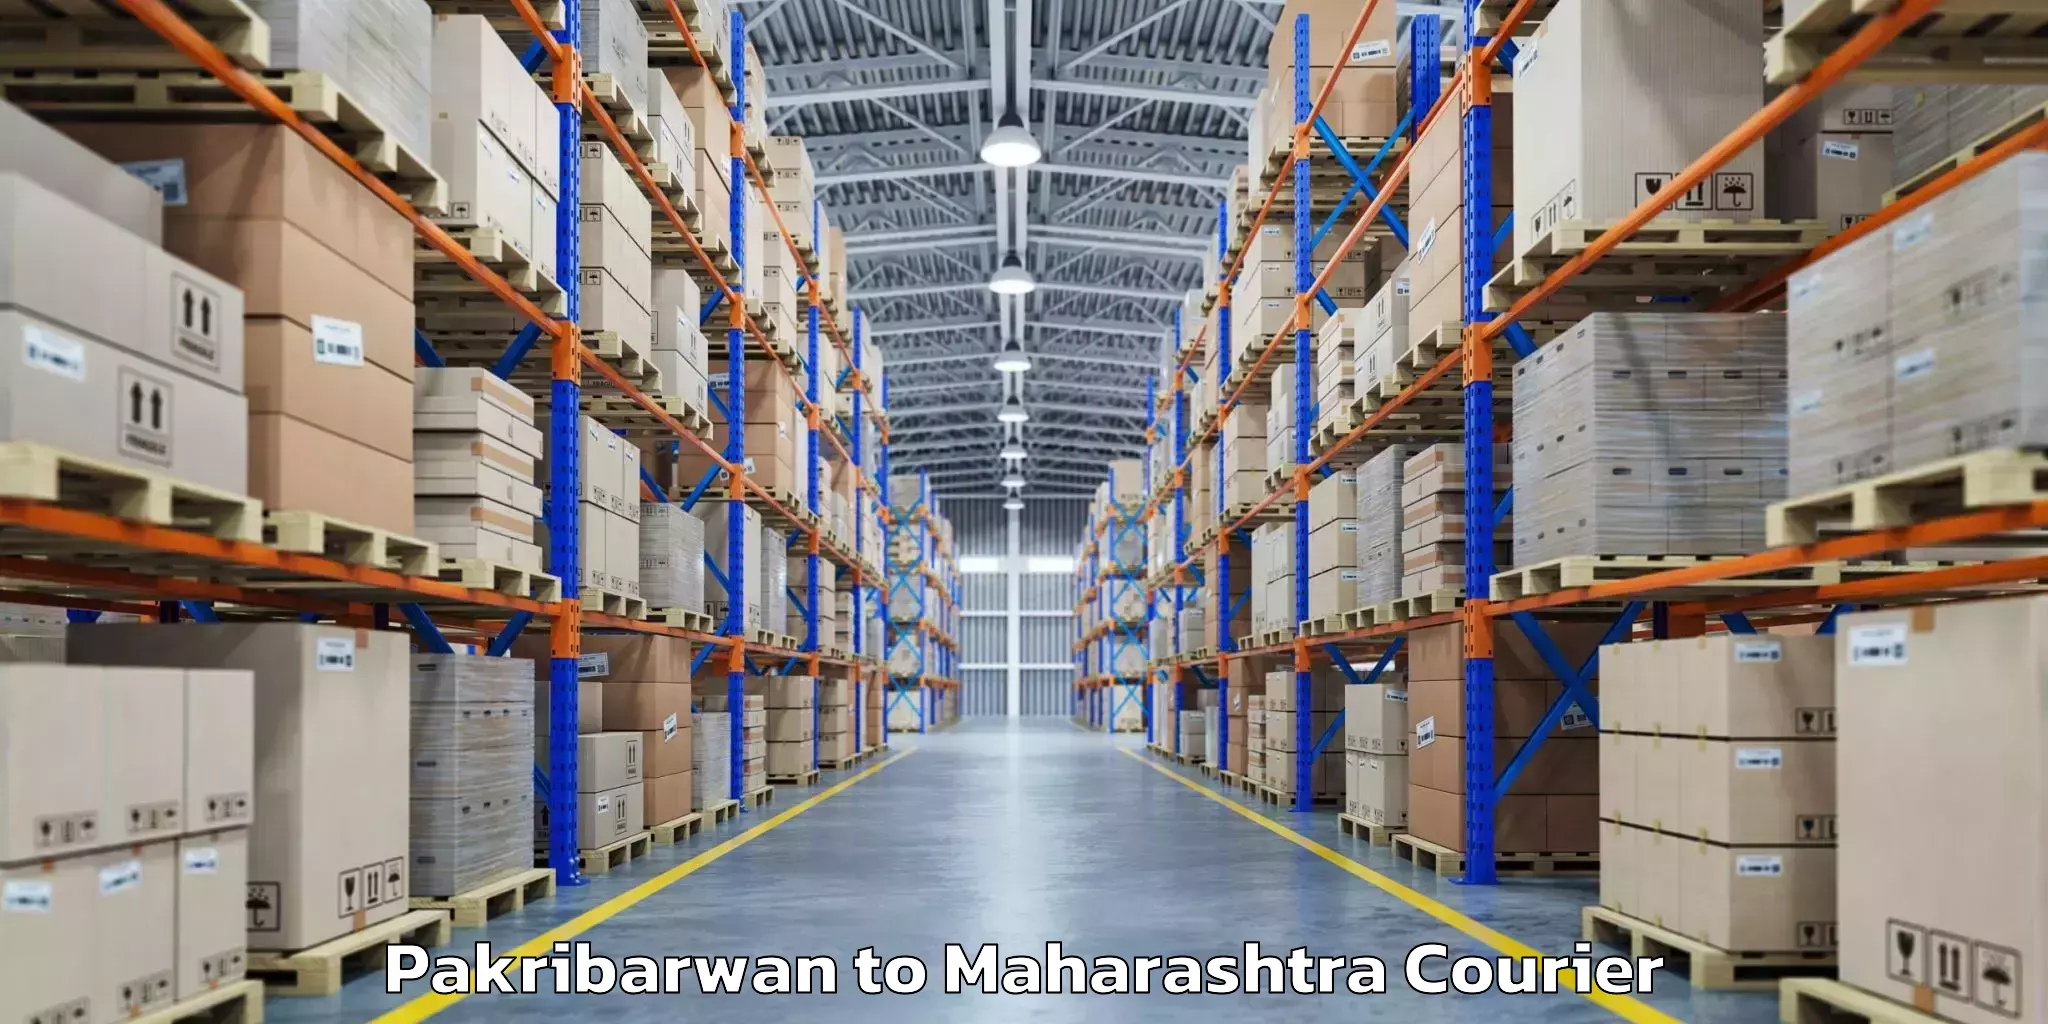 Baggage delivery planning Pakribarwan to IIT Mumbai